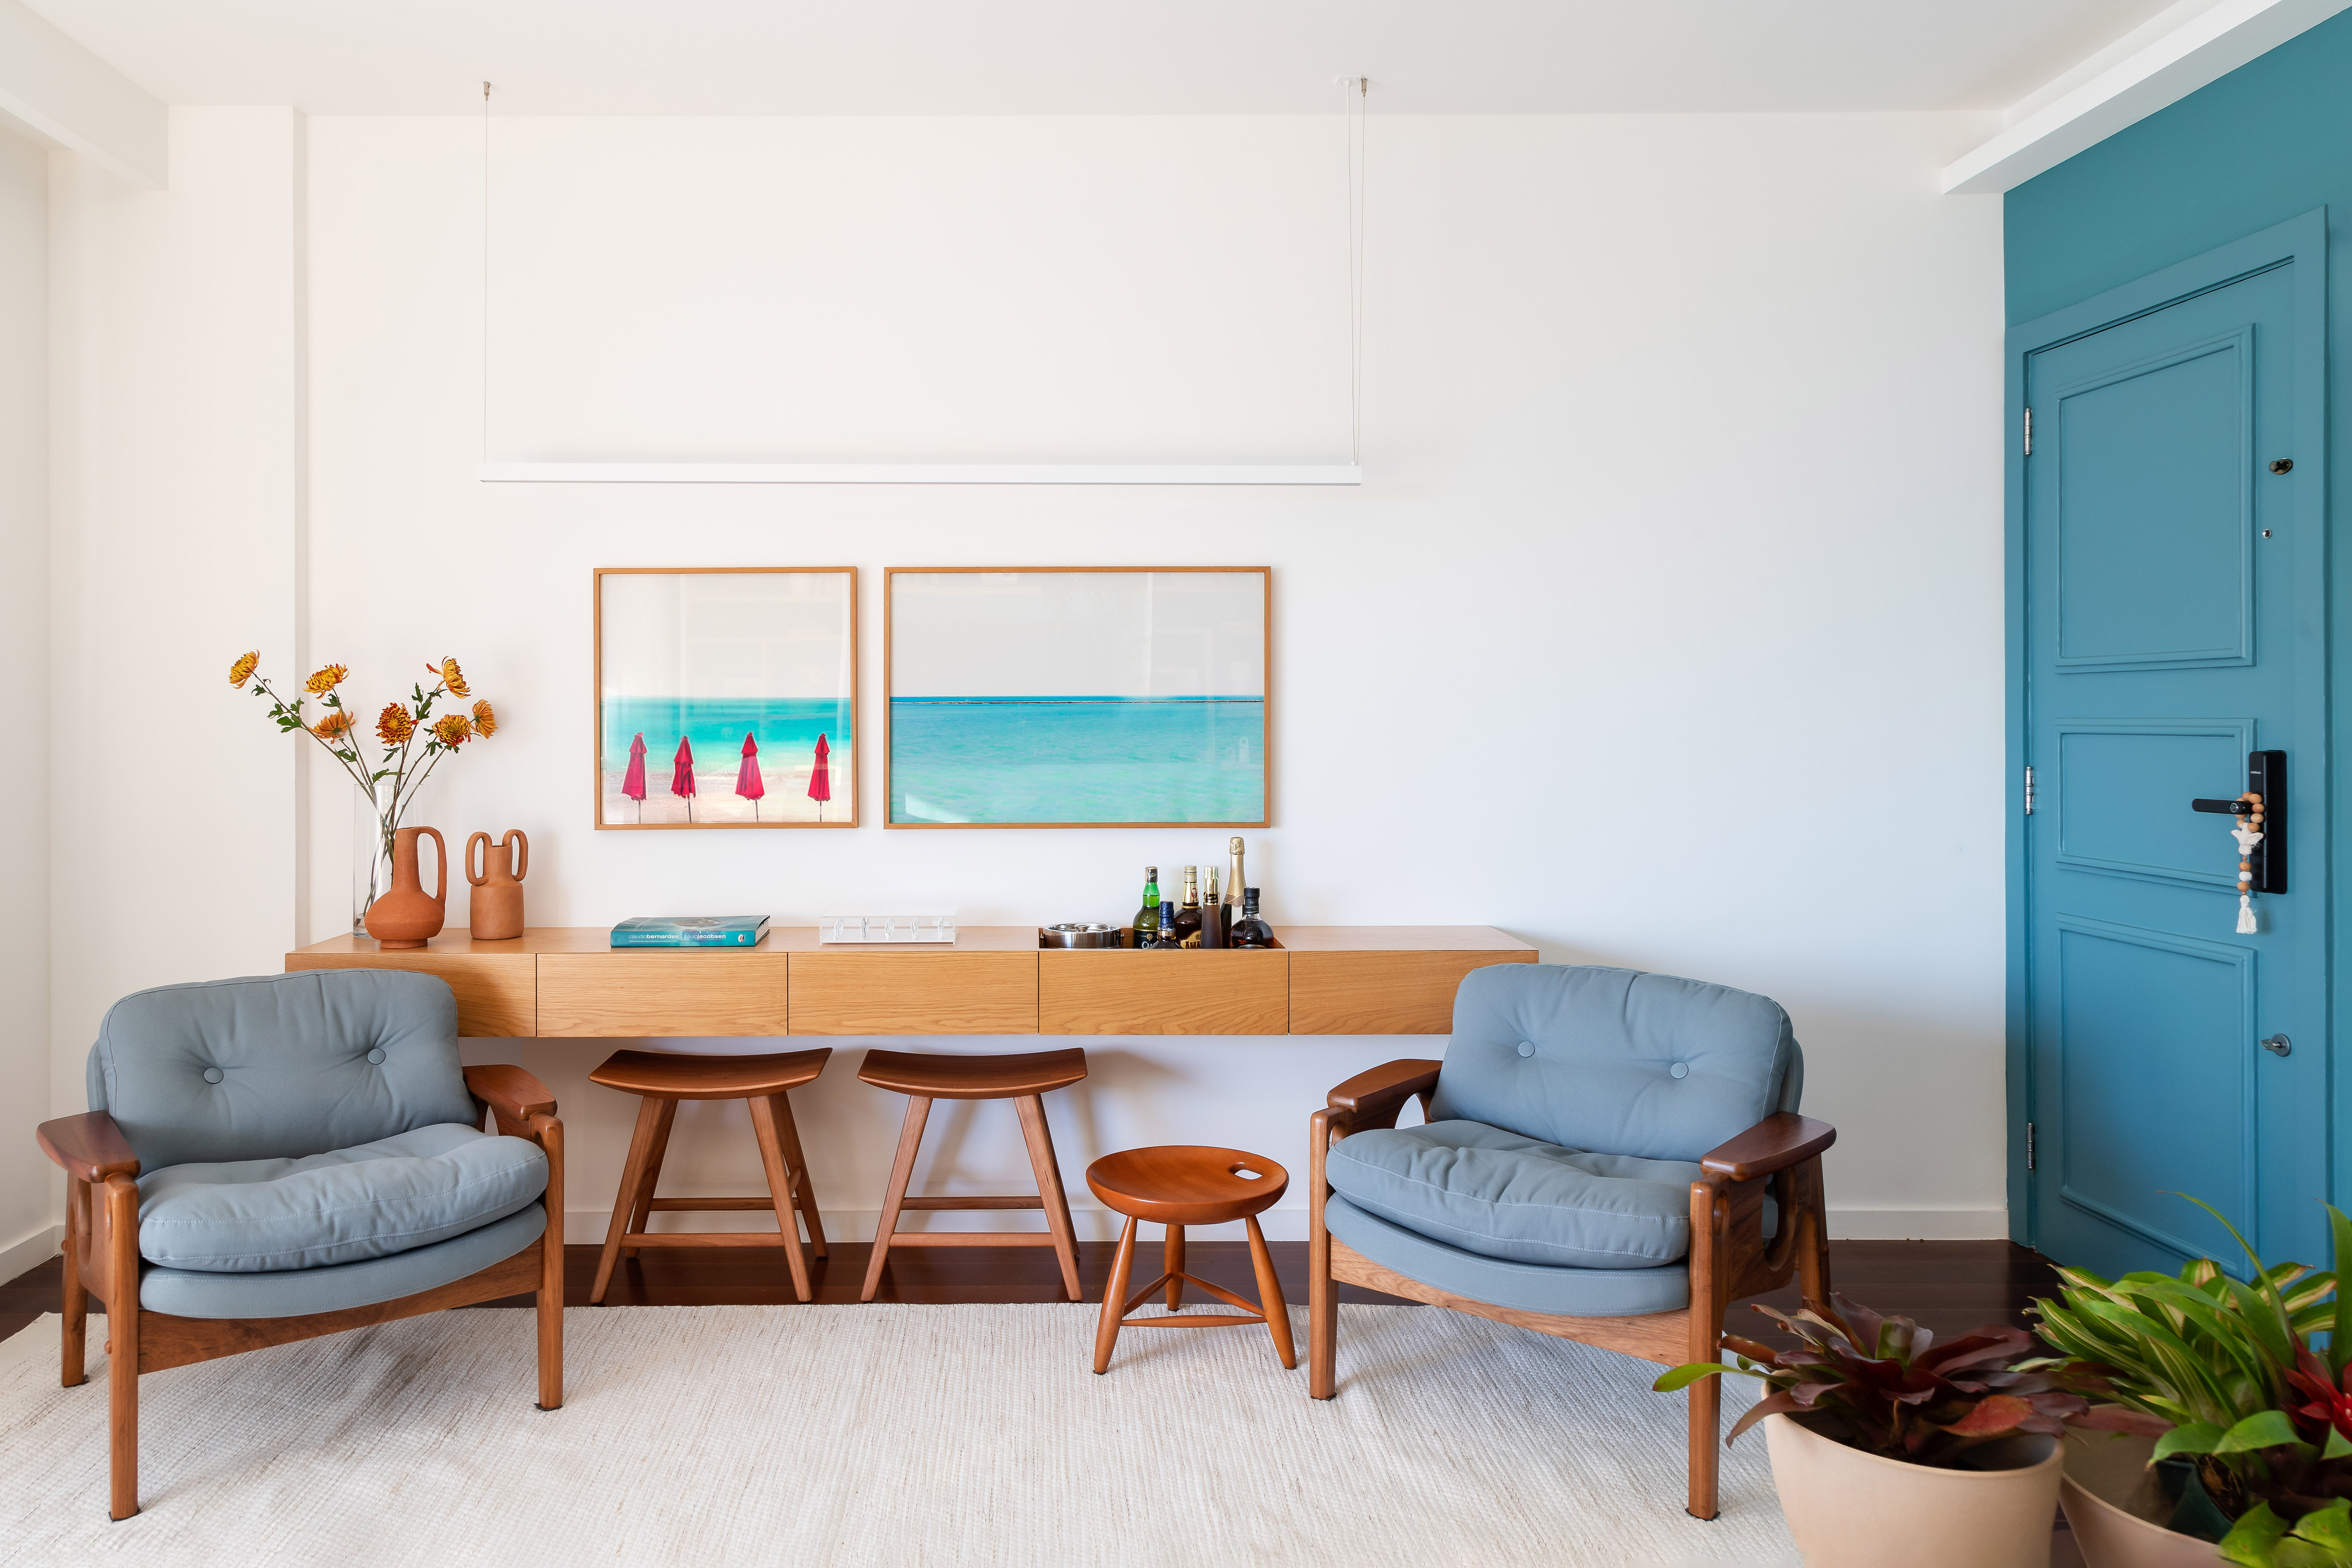 Projeto de MR Arquitetura. Na foto, sala de estar com parede branca, aparador de madeira, poltrona azul baixa.